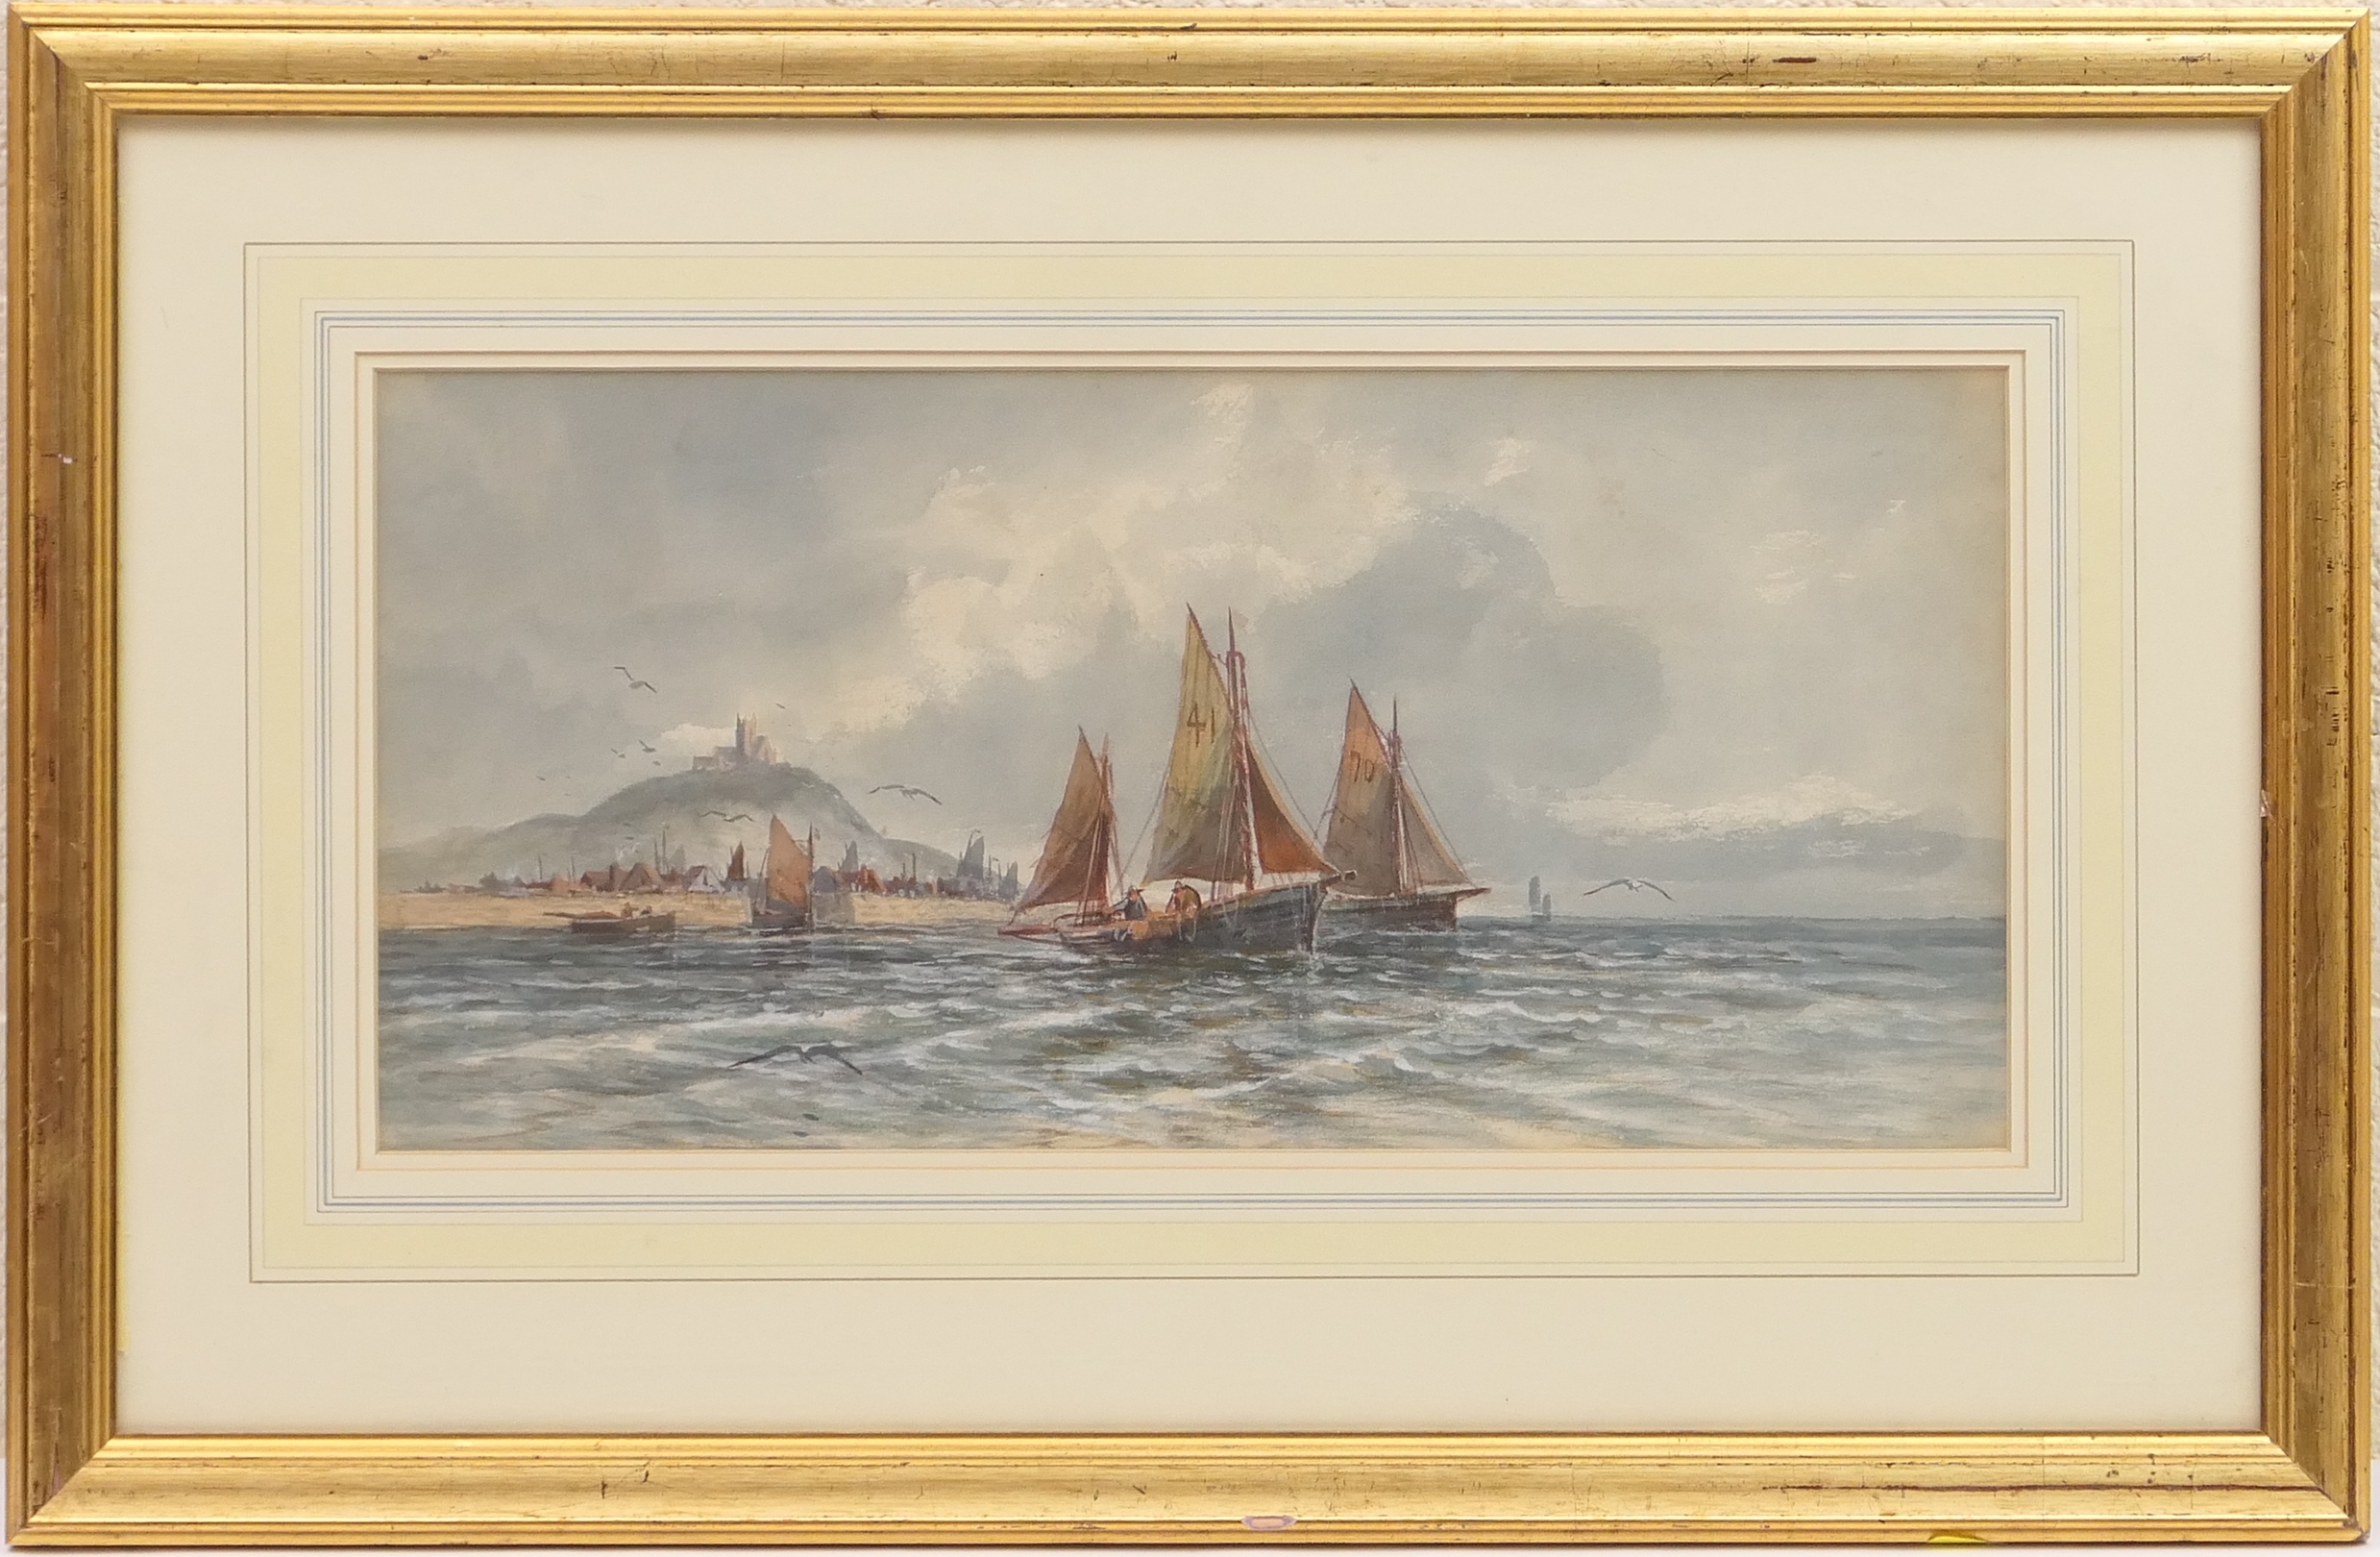 English School (circa 1900), Fishing smacks preparing to sail, watercolour, 25cm x 50cm